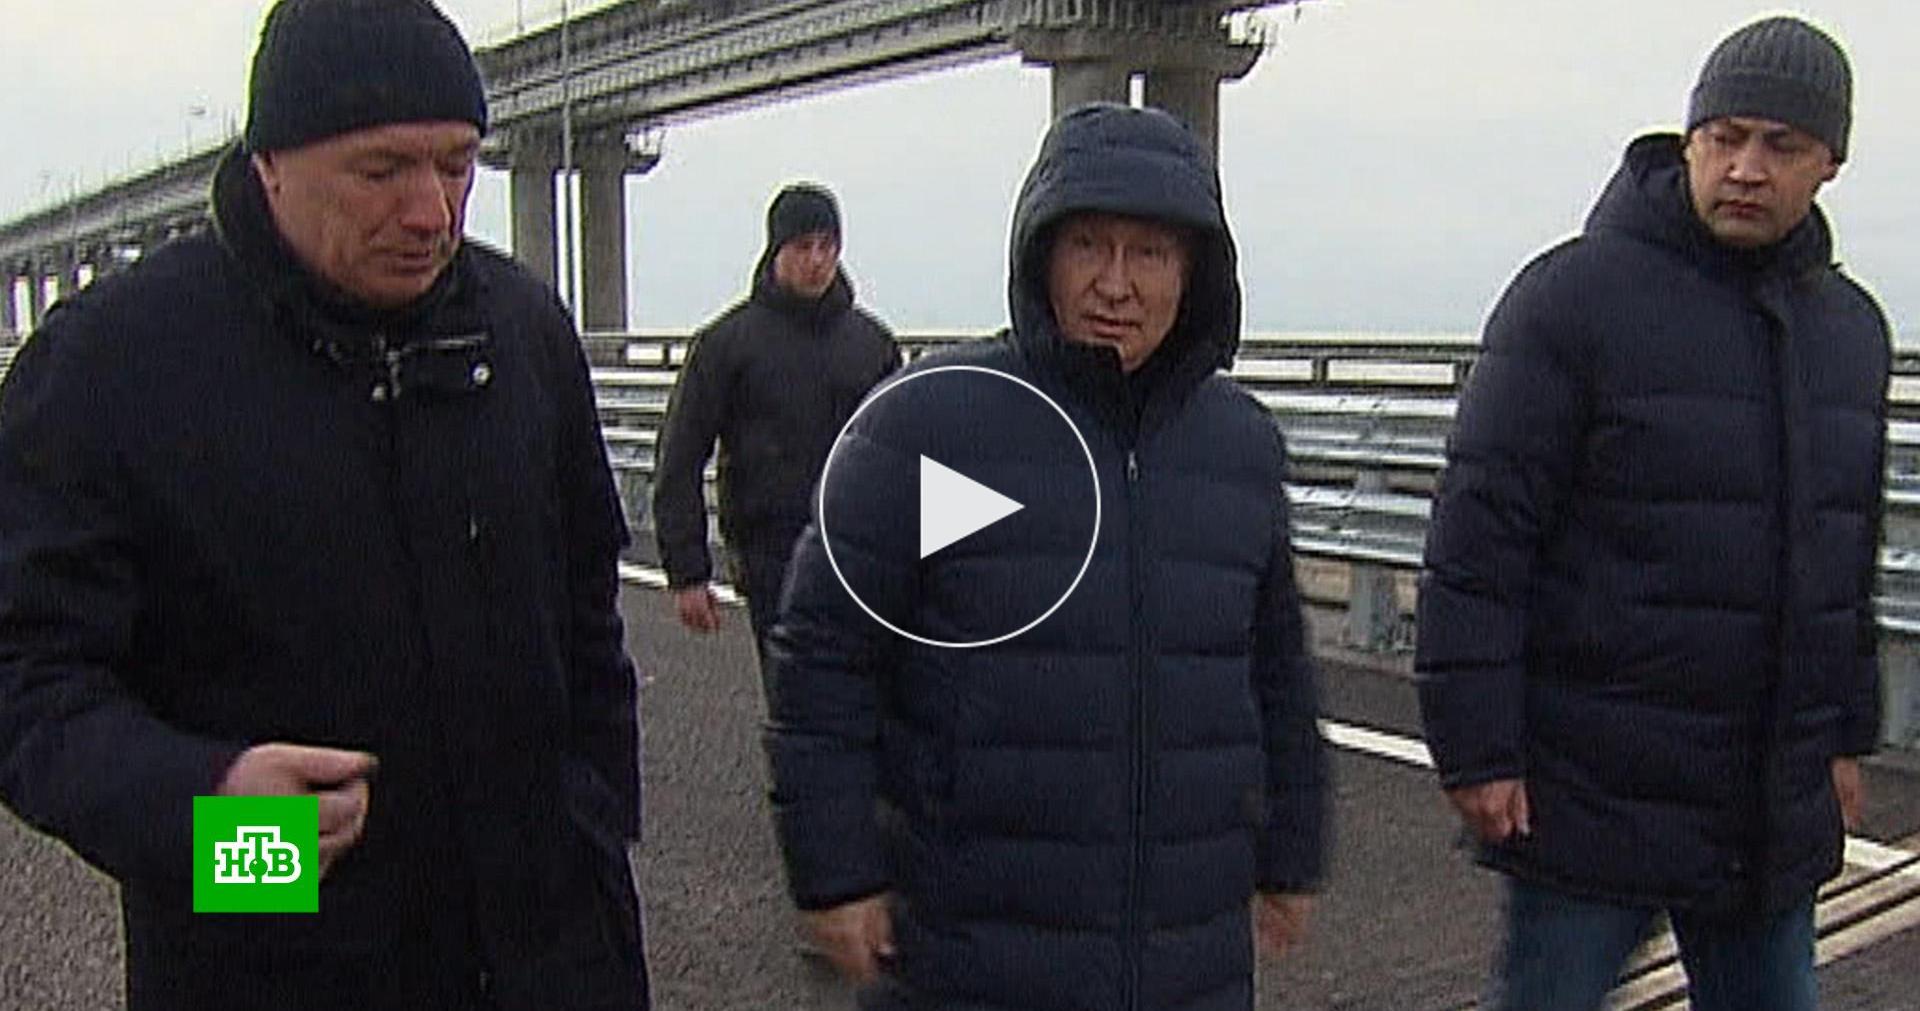 путин открывает крымский мост